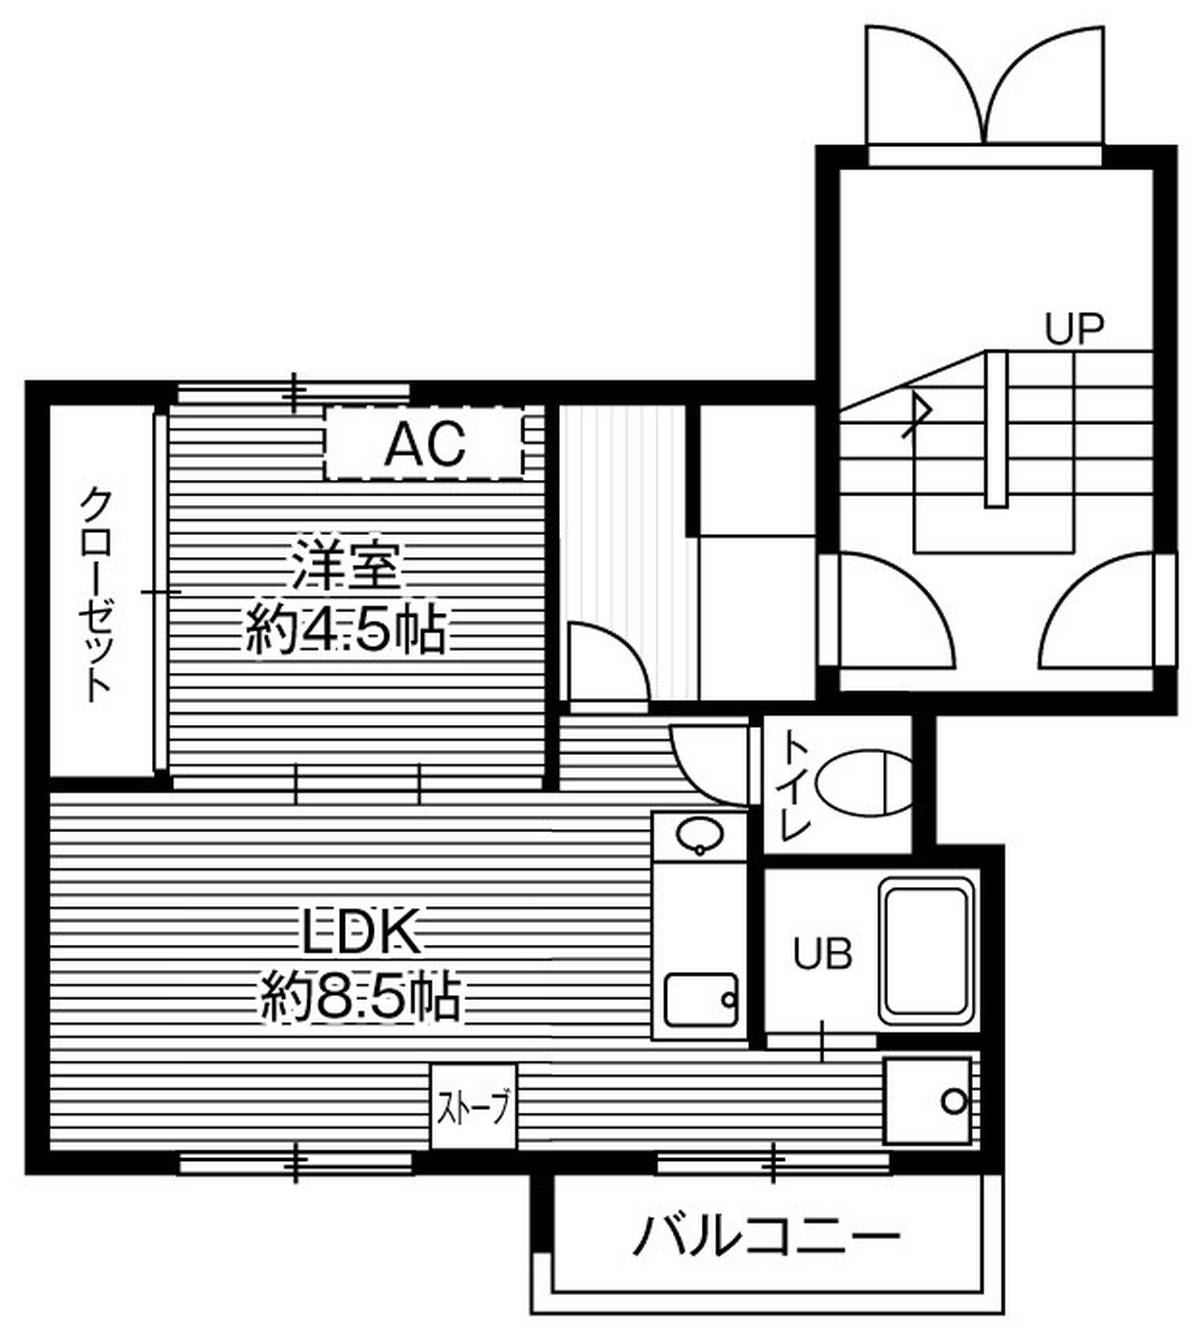 1LDK floorplan of Village House Teine in Nishi-ku